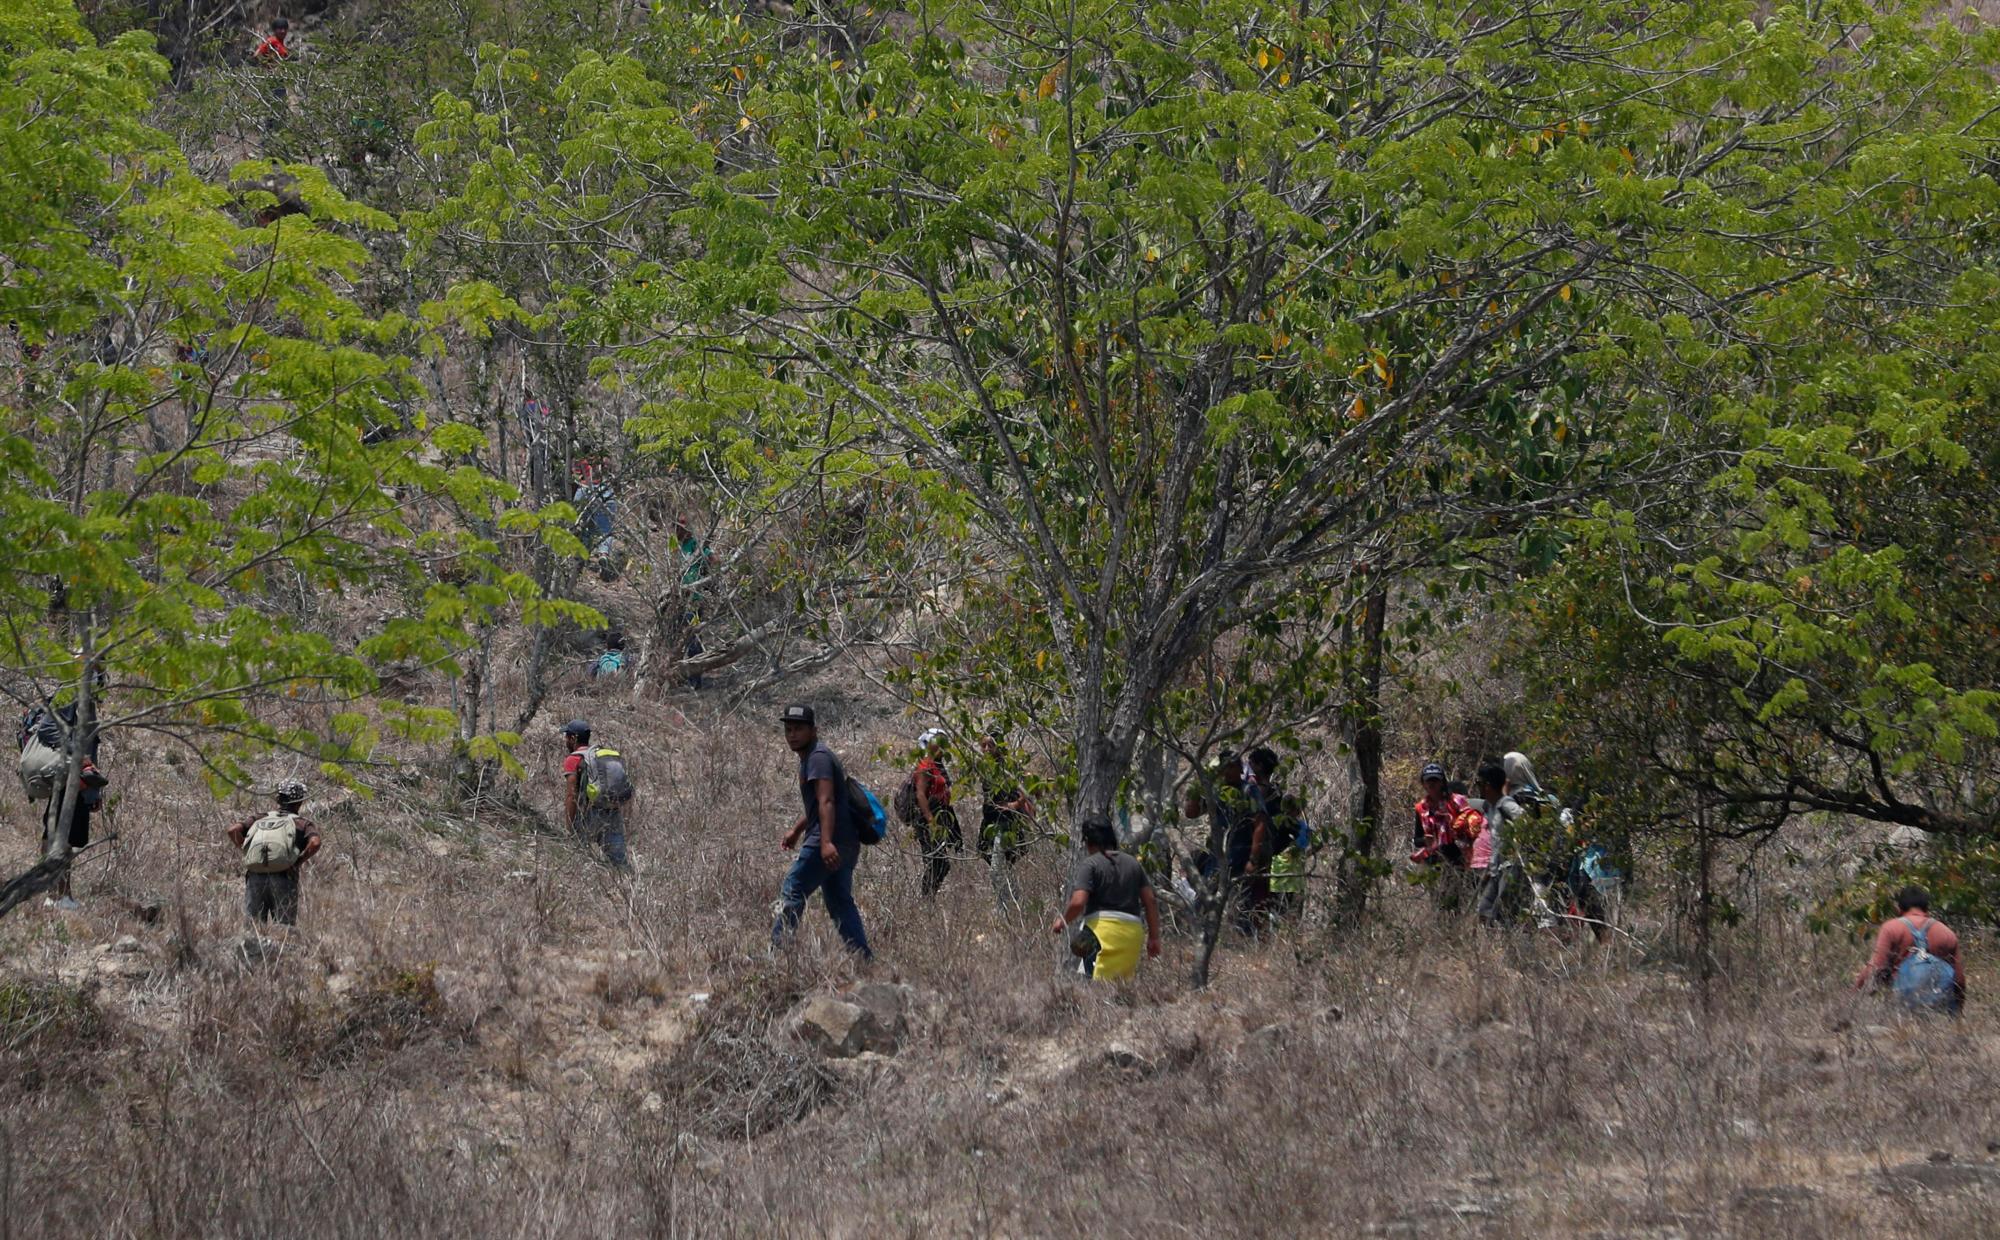 Los migrantes centroamericanos intentan evadir a los agentes de inmigración mexicanos en la carretera a Pijijiapan, México. La policía mexicana y los agentes de inmigración detuvieron a cientos de migrantes centroamericanos en el mayor ataque individual de una caravana migrante desde que los grupos empezaron a moverse por México el año pasado.